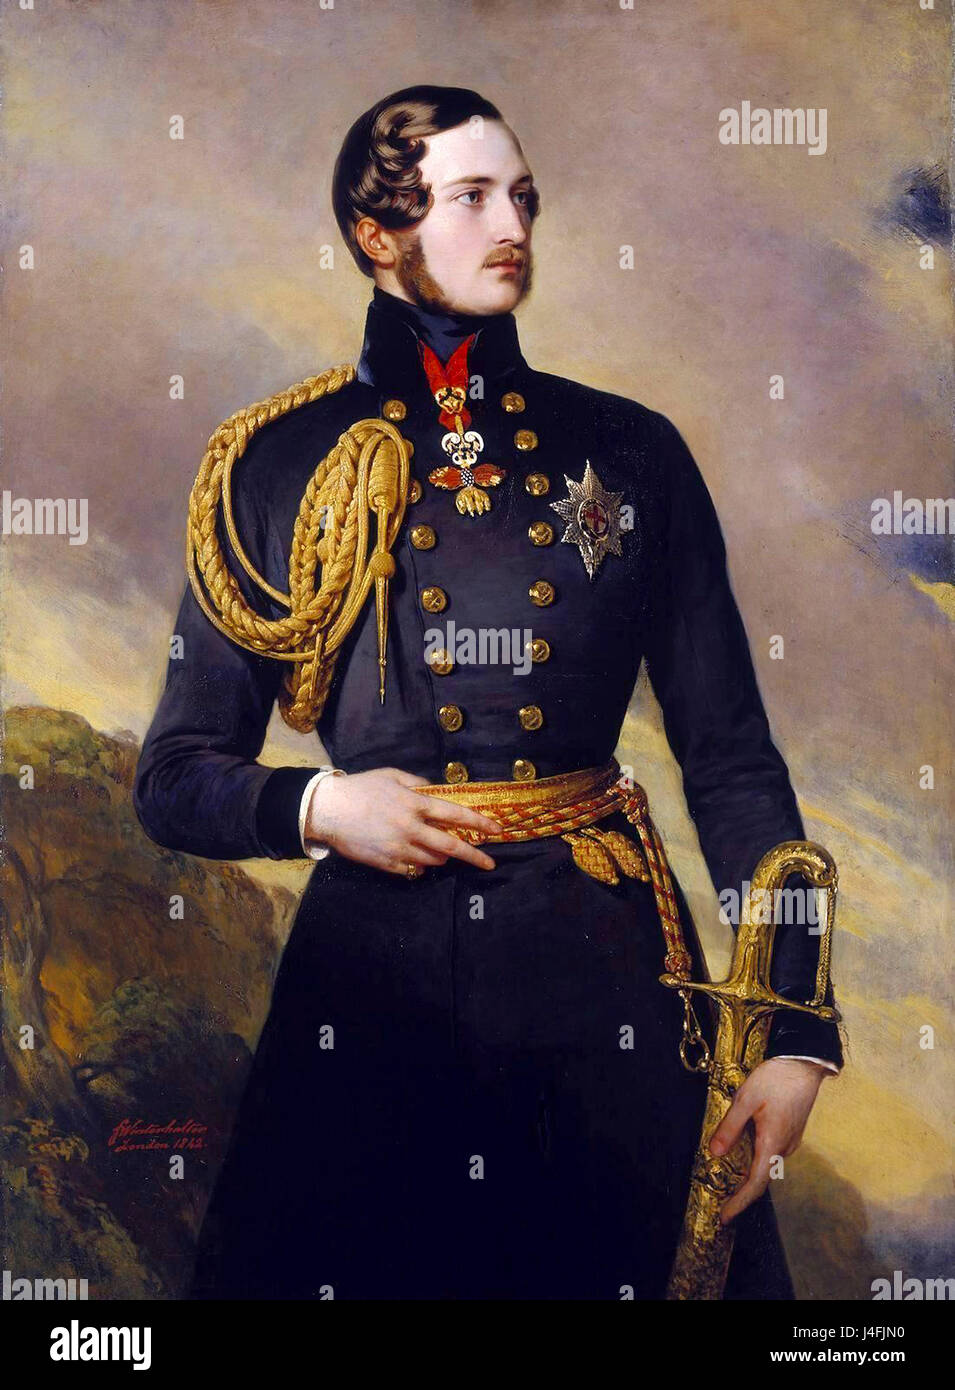 Prince Albert, Prinz Albert von Sachsen-Coburg und Gotha (Francis Albert Augustus Charles Emmanuel) war der Ehemann von Königin Victoria. Stockfoto